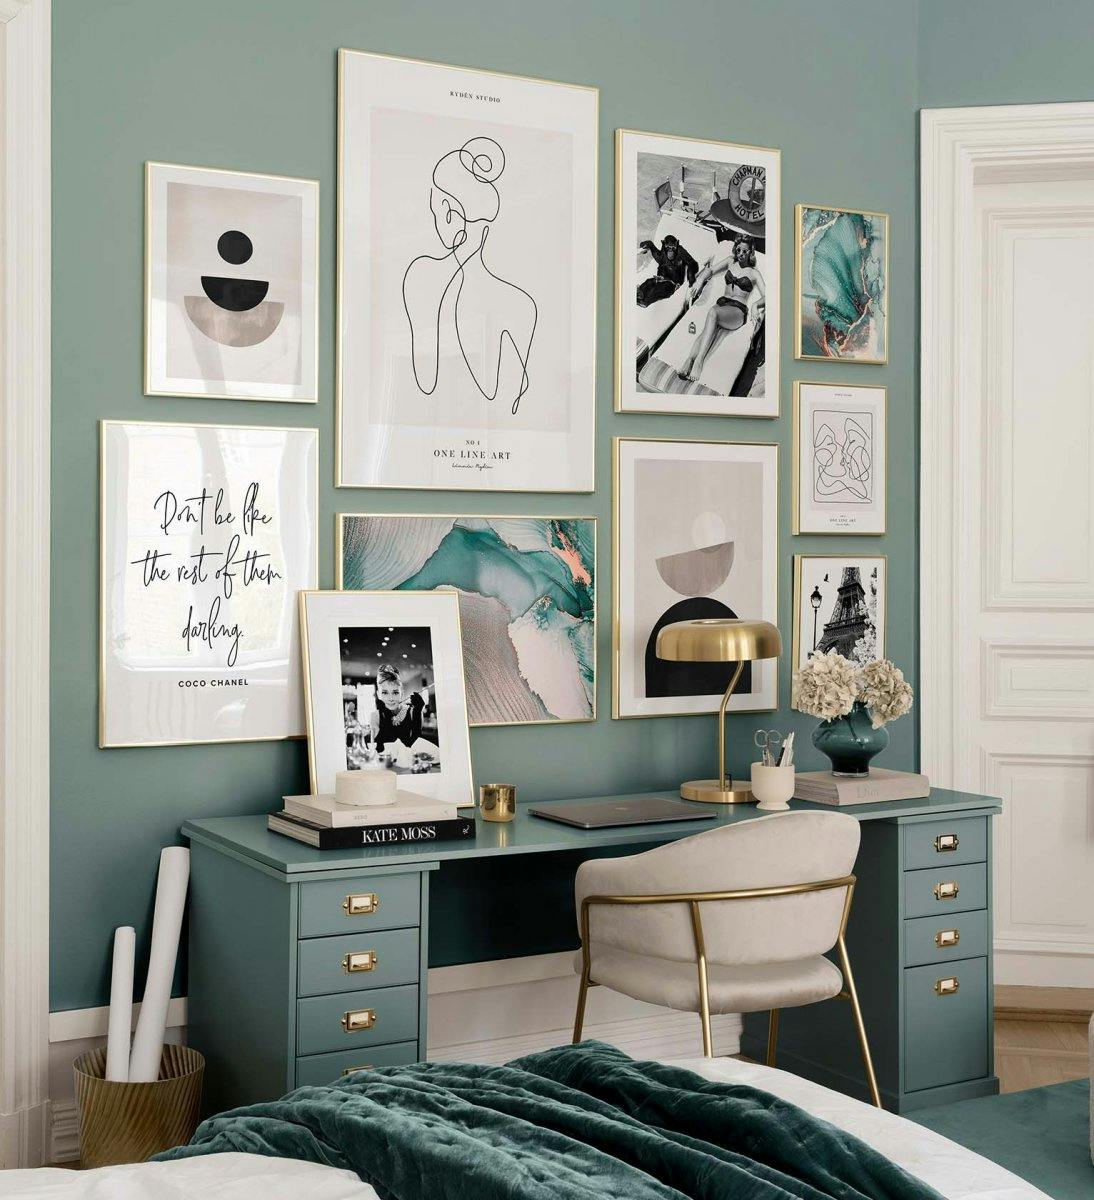 Trendi galériafal grafikai, vonalas és fotónyomatokkal zöld és természet színekben, arany kerettel a hálószobába